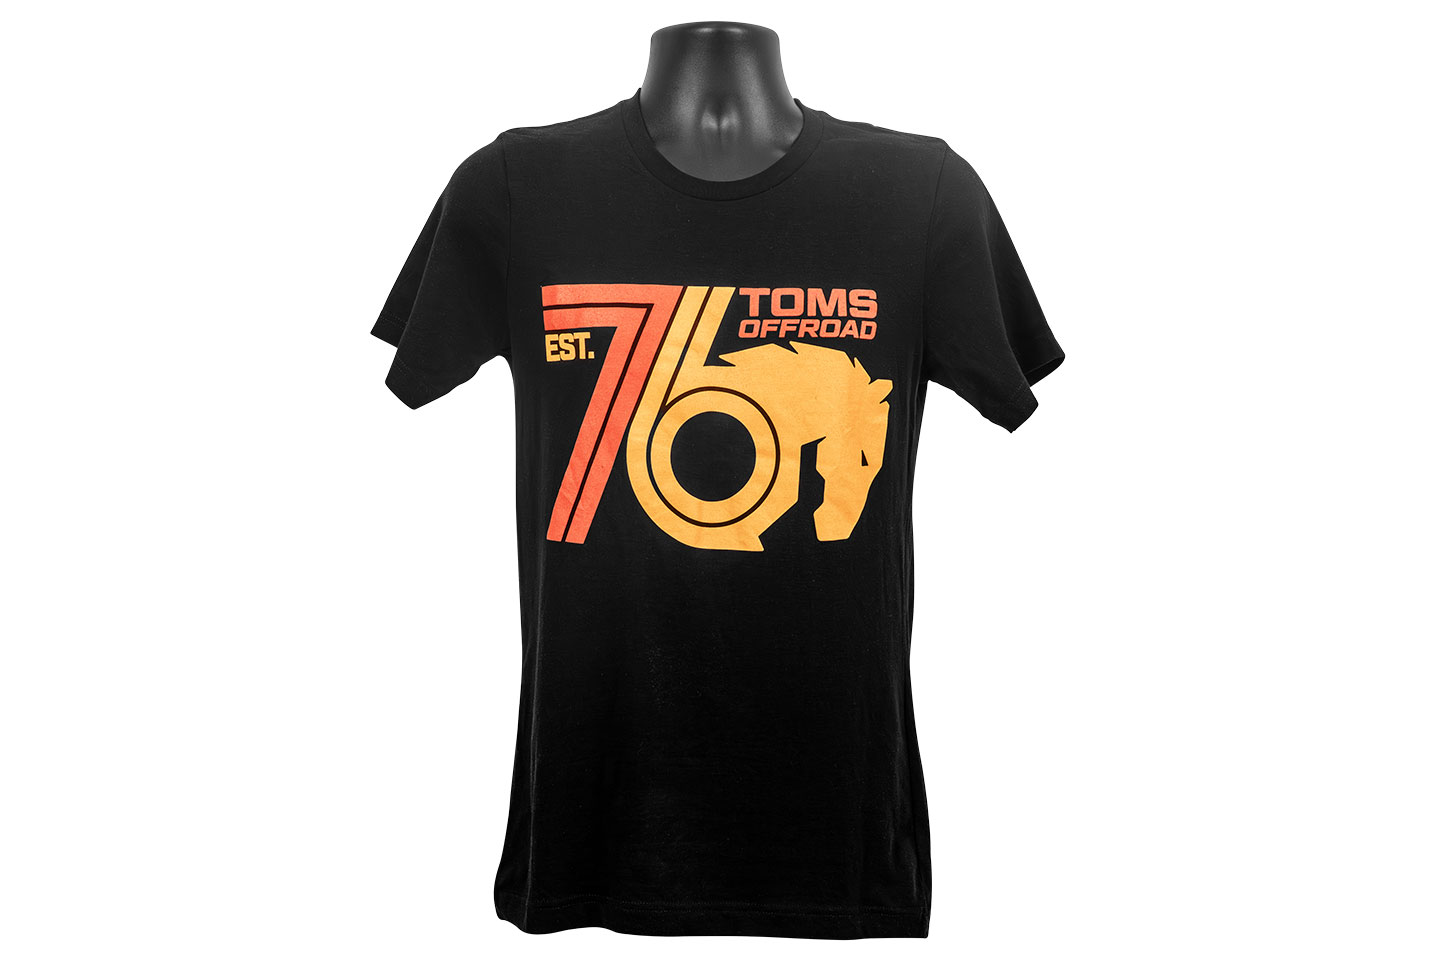 TOMS OFFROAD EST. 76 T-Shirt - Black